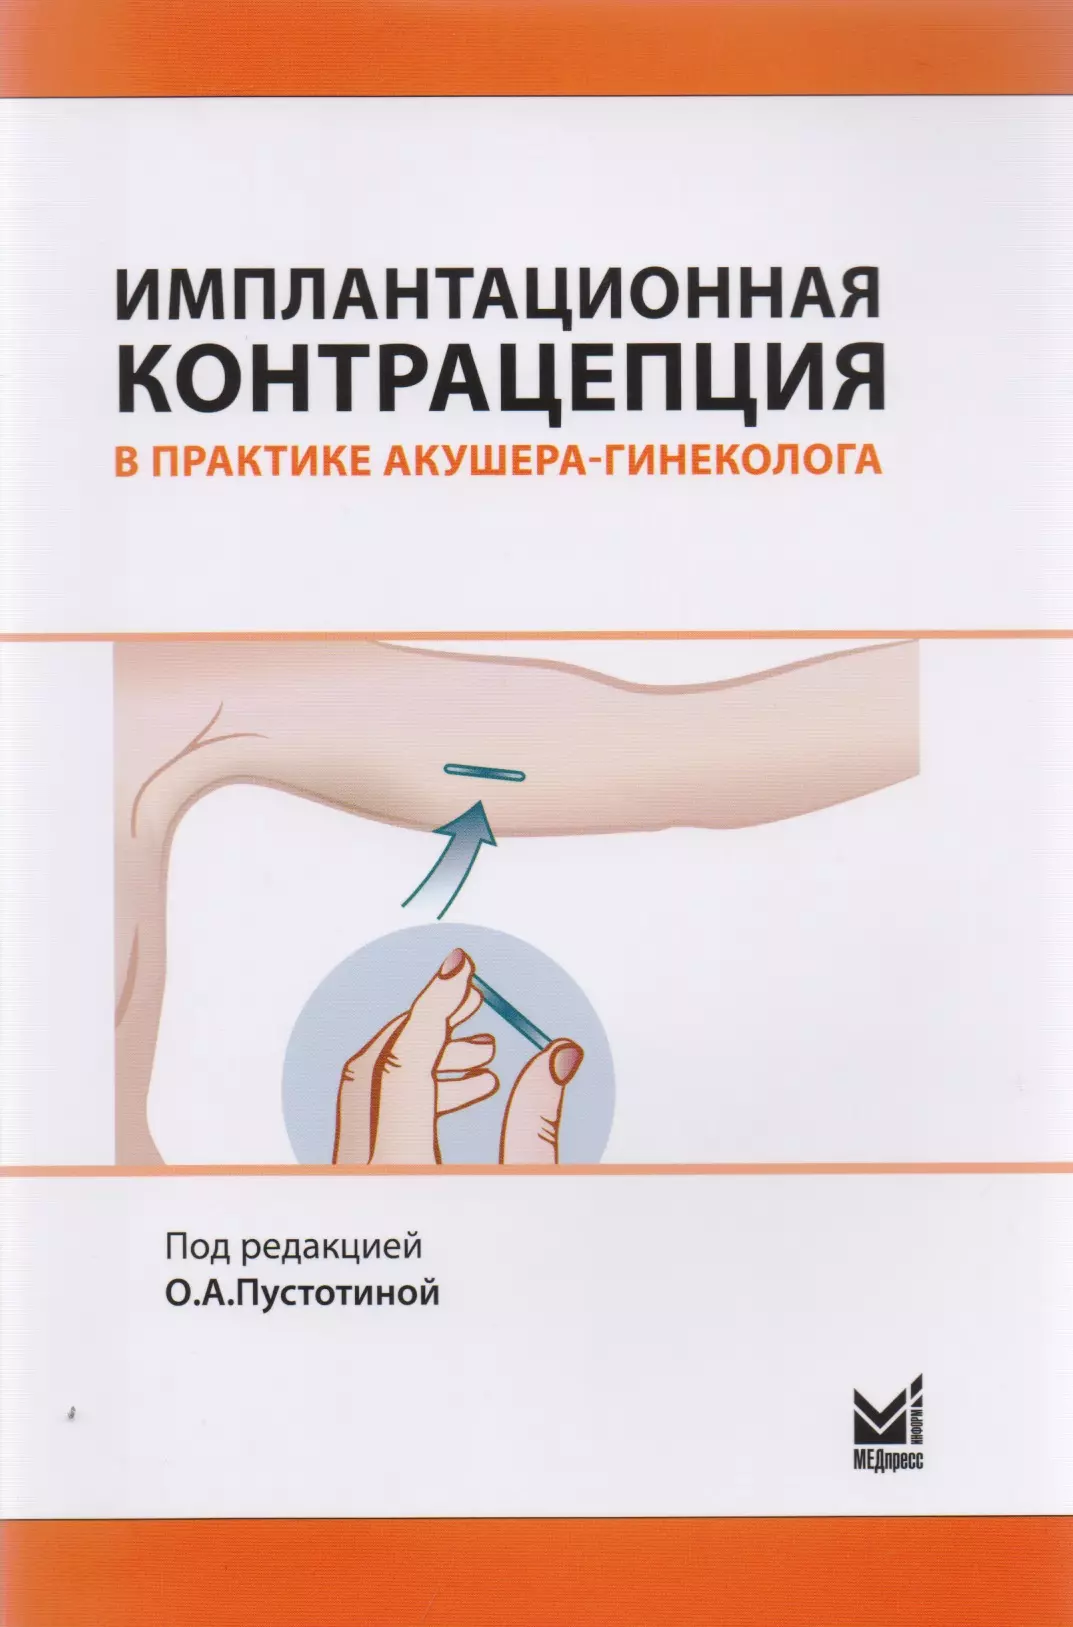 Имплантационная контрацепция в практике акушера-гинеколога справочник по контрацепции